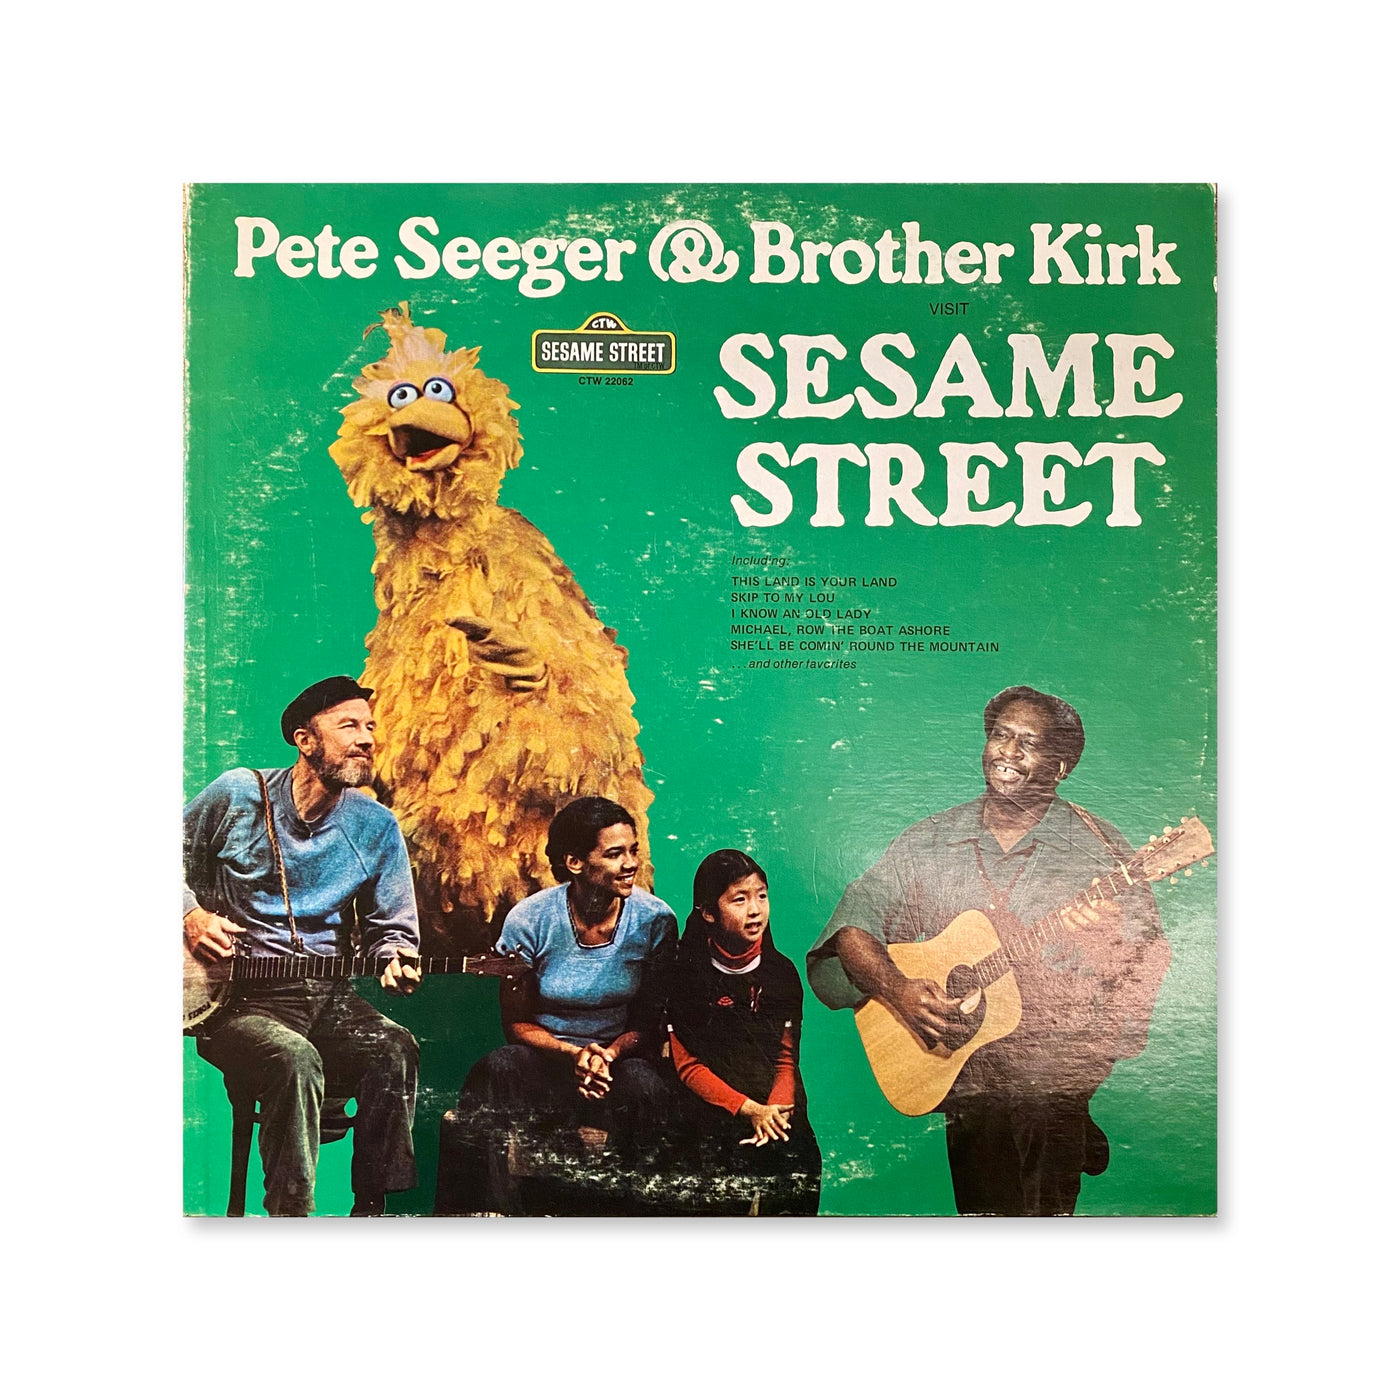 Pete Seeger & Brother Kirk – Visit Sesame Street